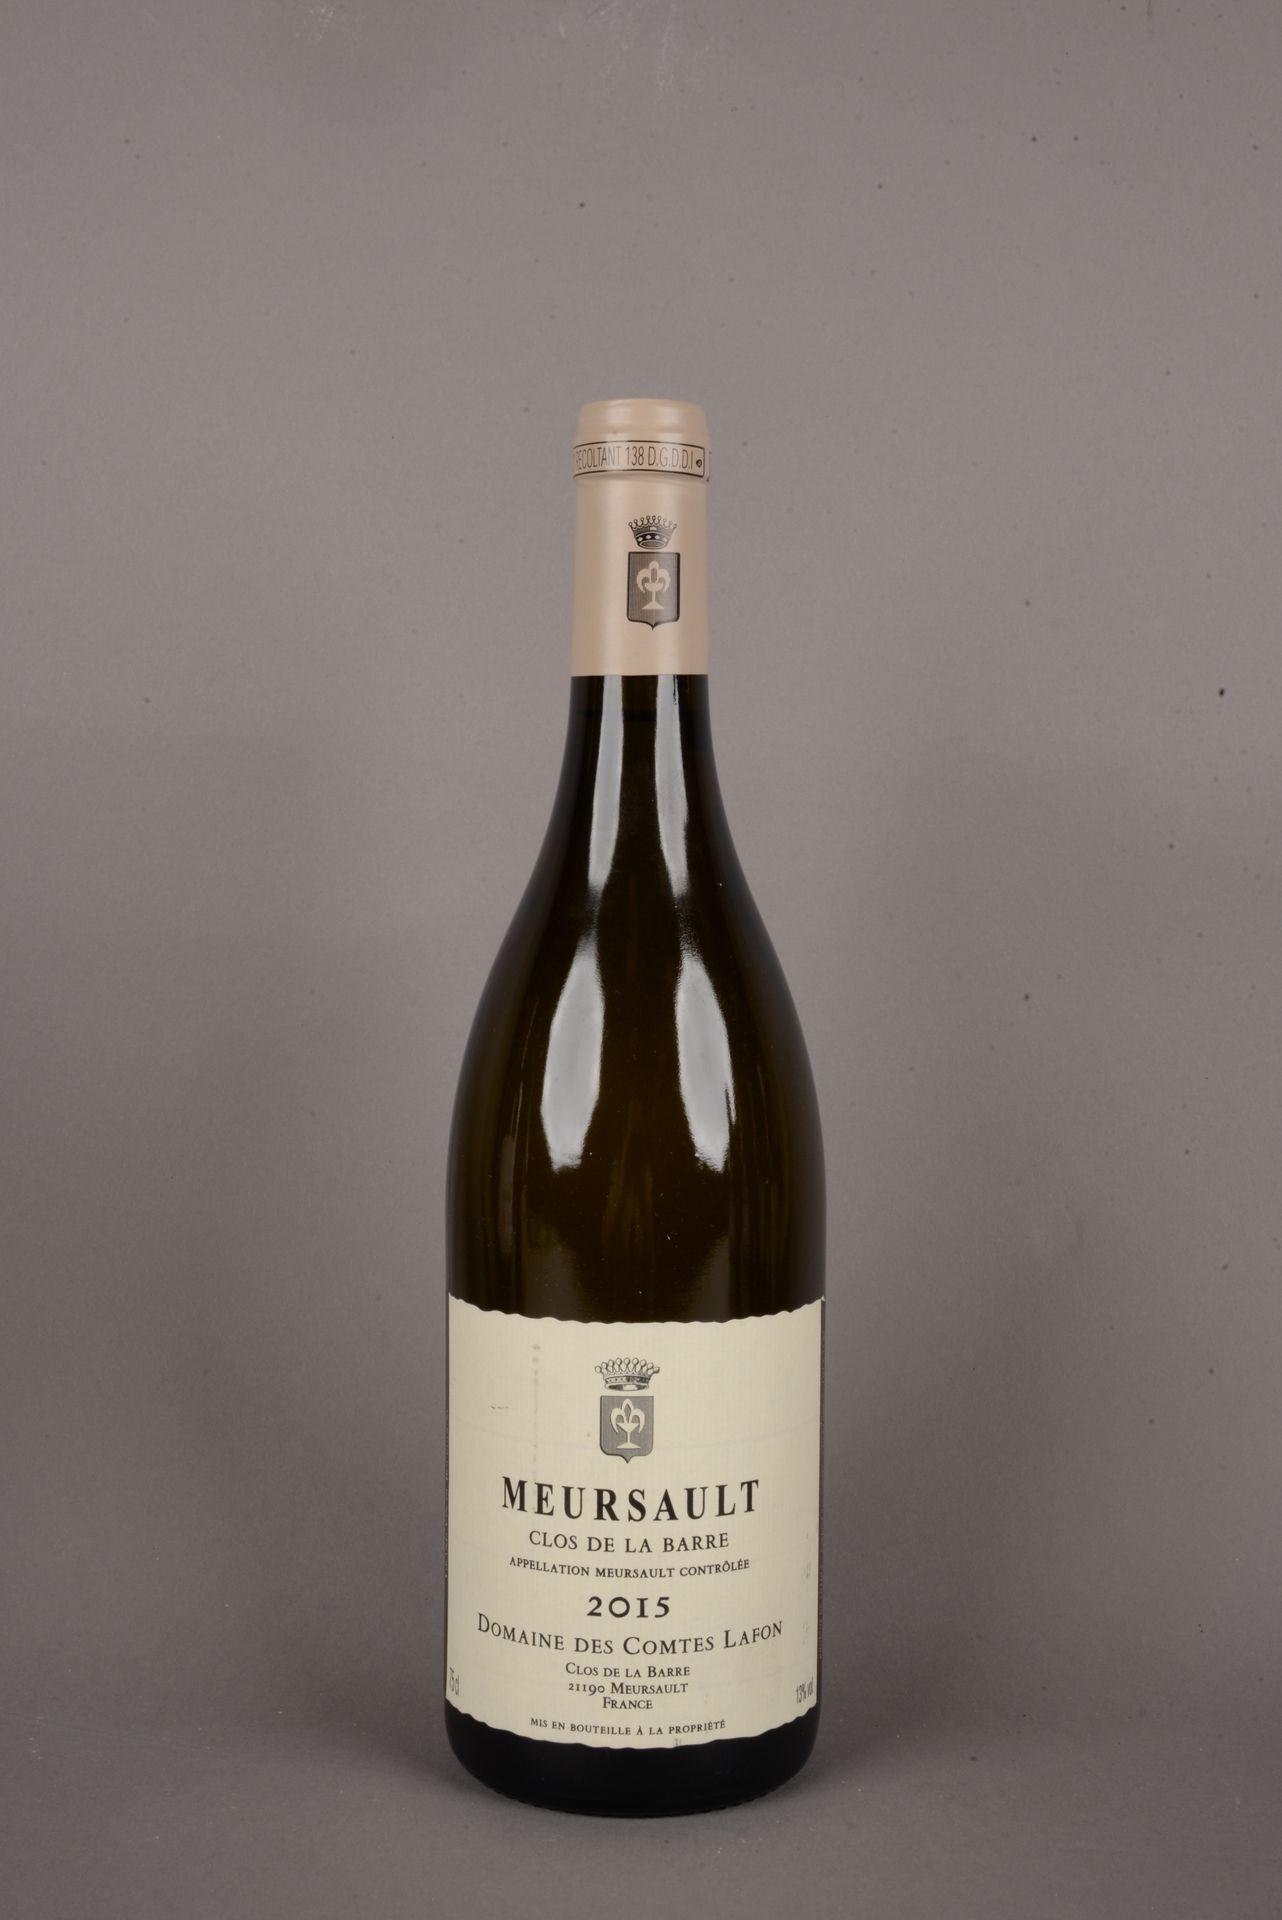 Null 1 bottiglia MEURSAULT Clos de la barre, Domaine des Comtes LAFON, 2015.